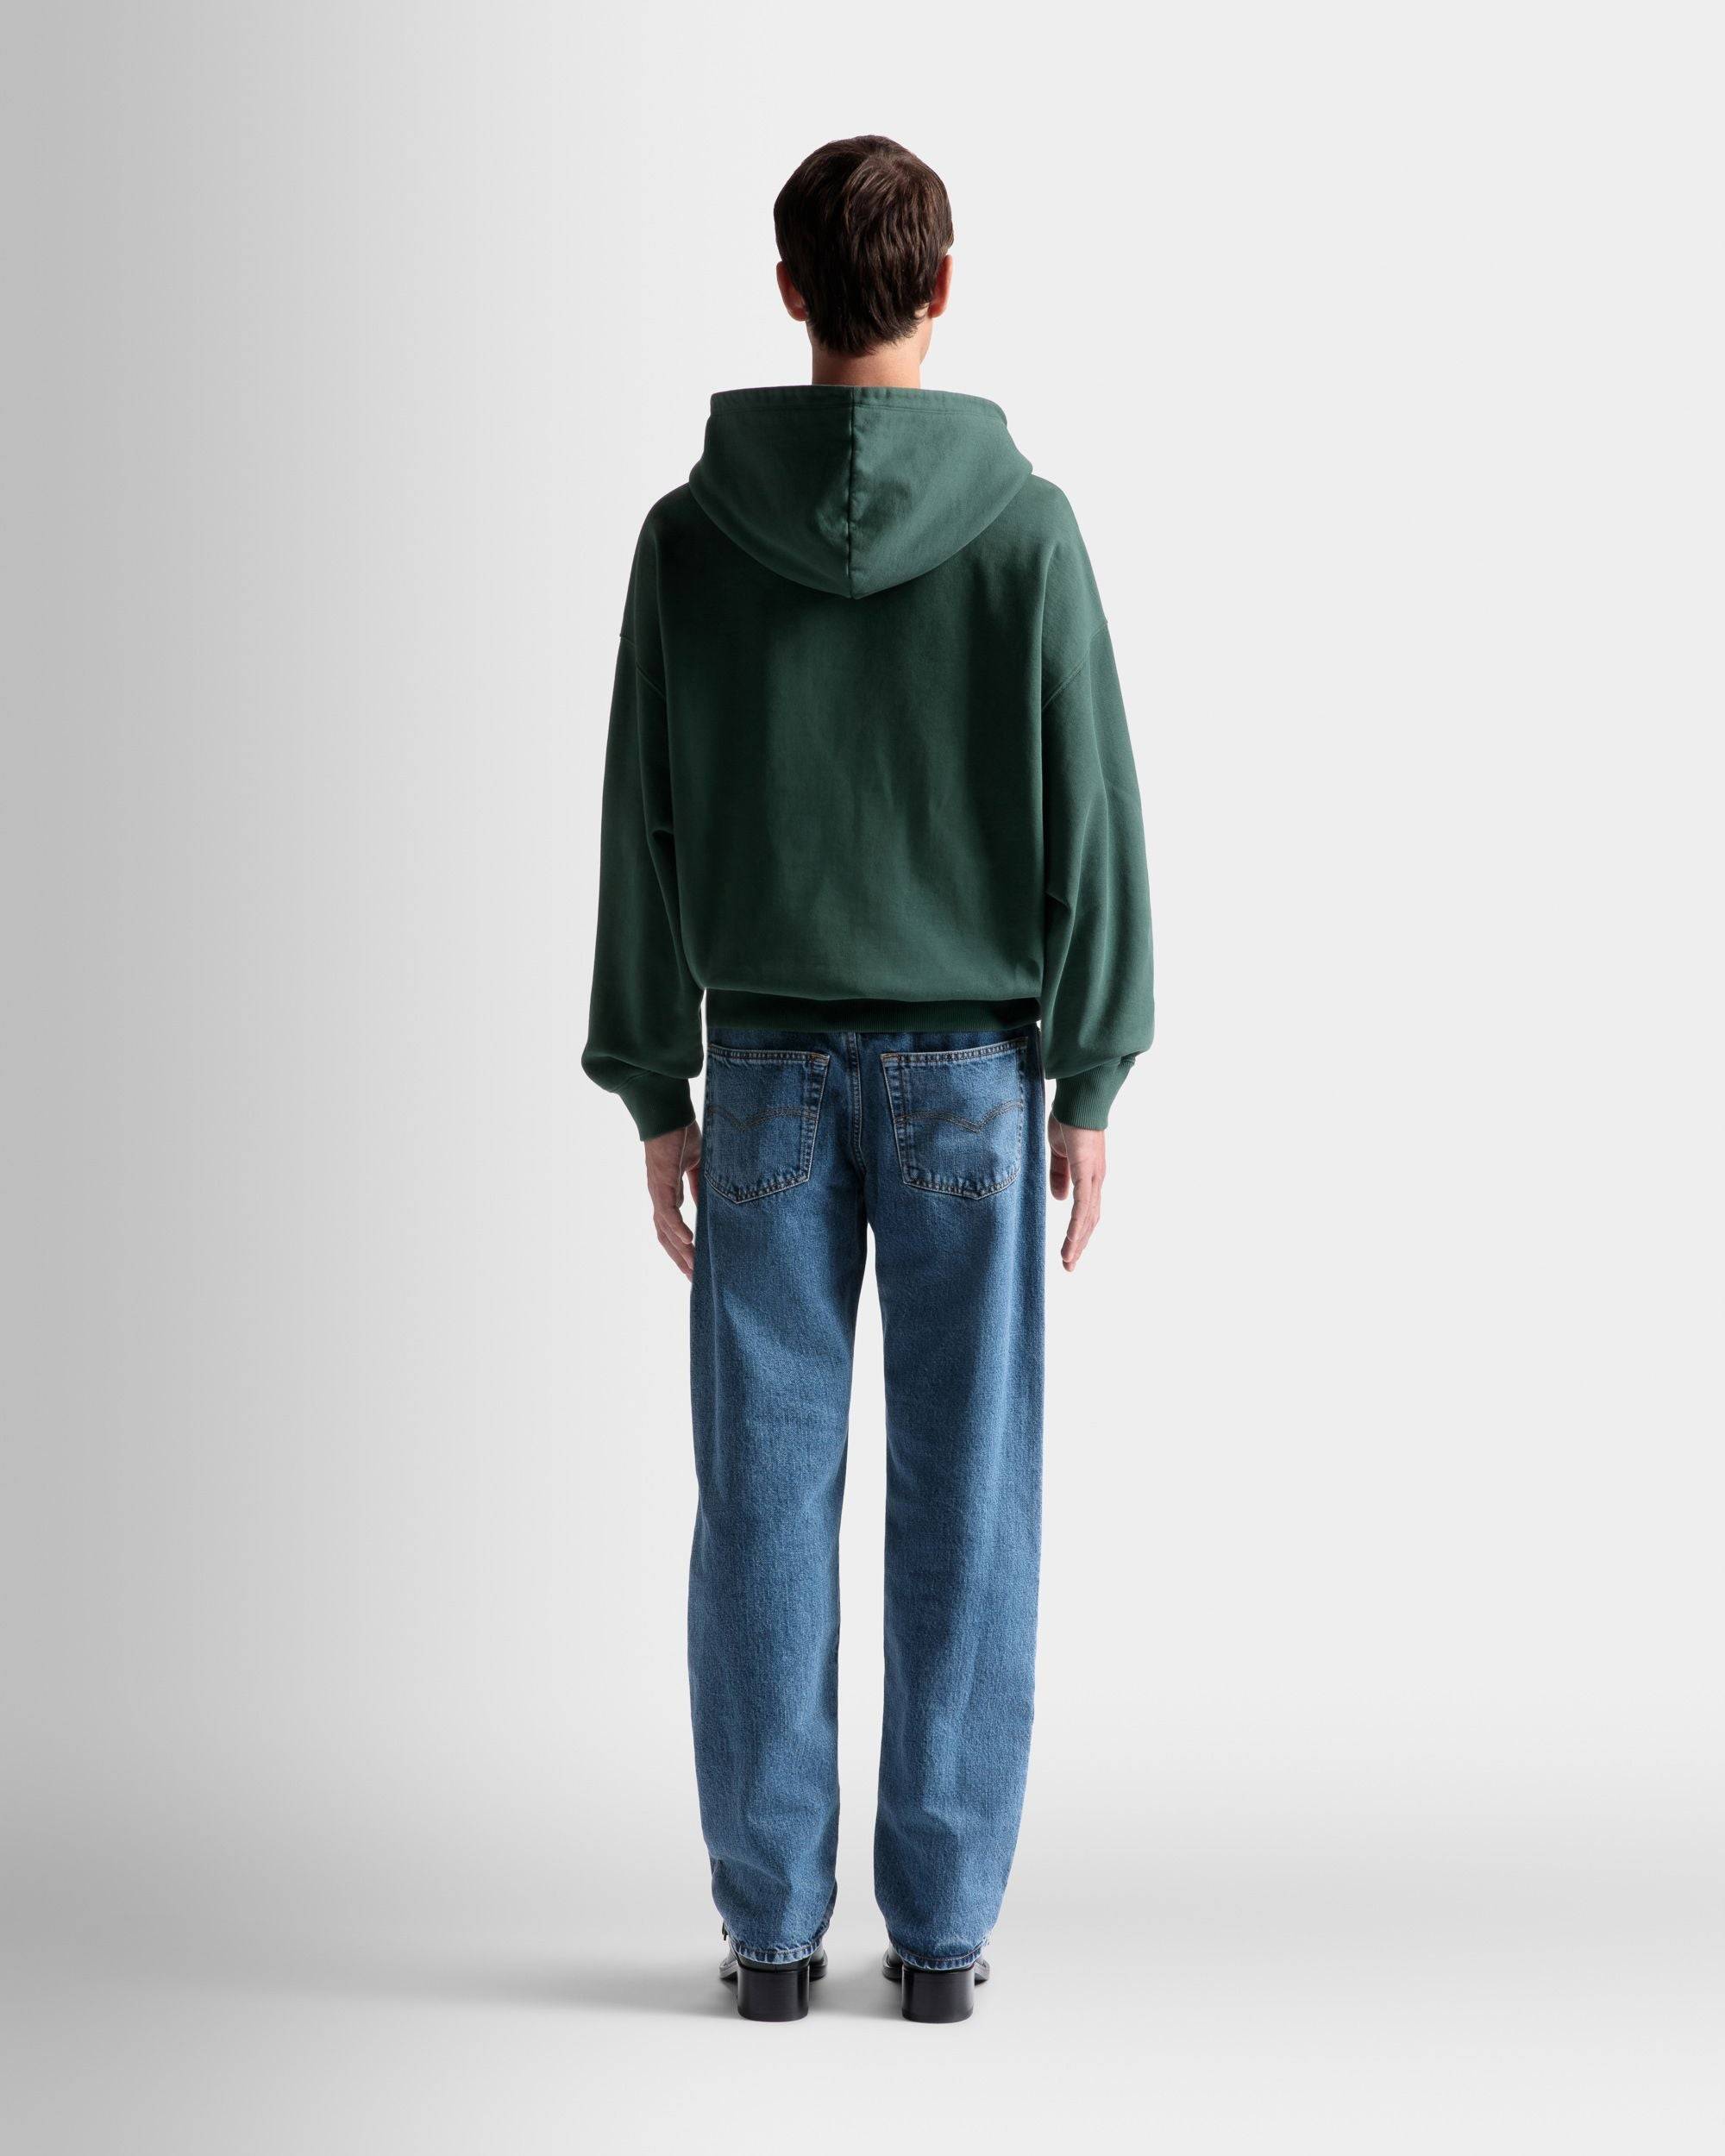 Foiled Hooded Sweatshirt | Men's Sweatshirt | Kelly Green Cotton | Bally | On Model Back